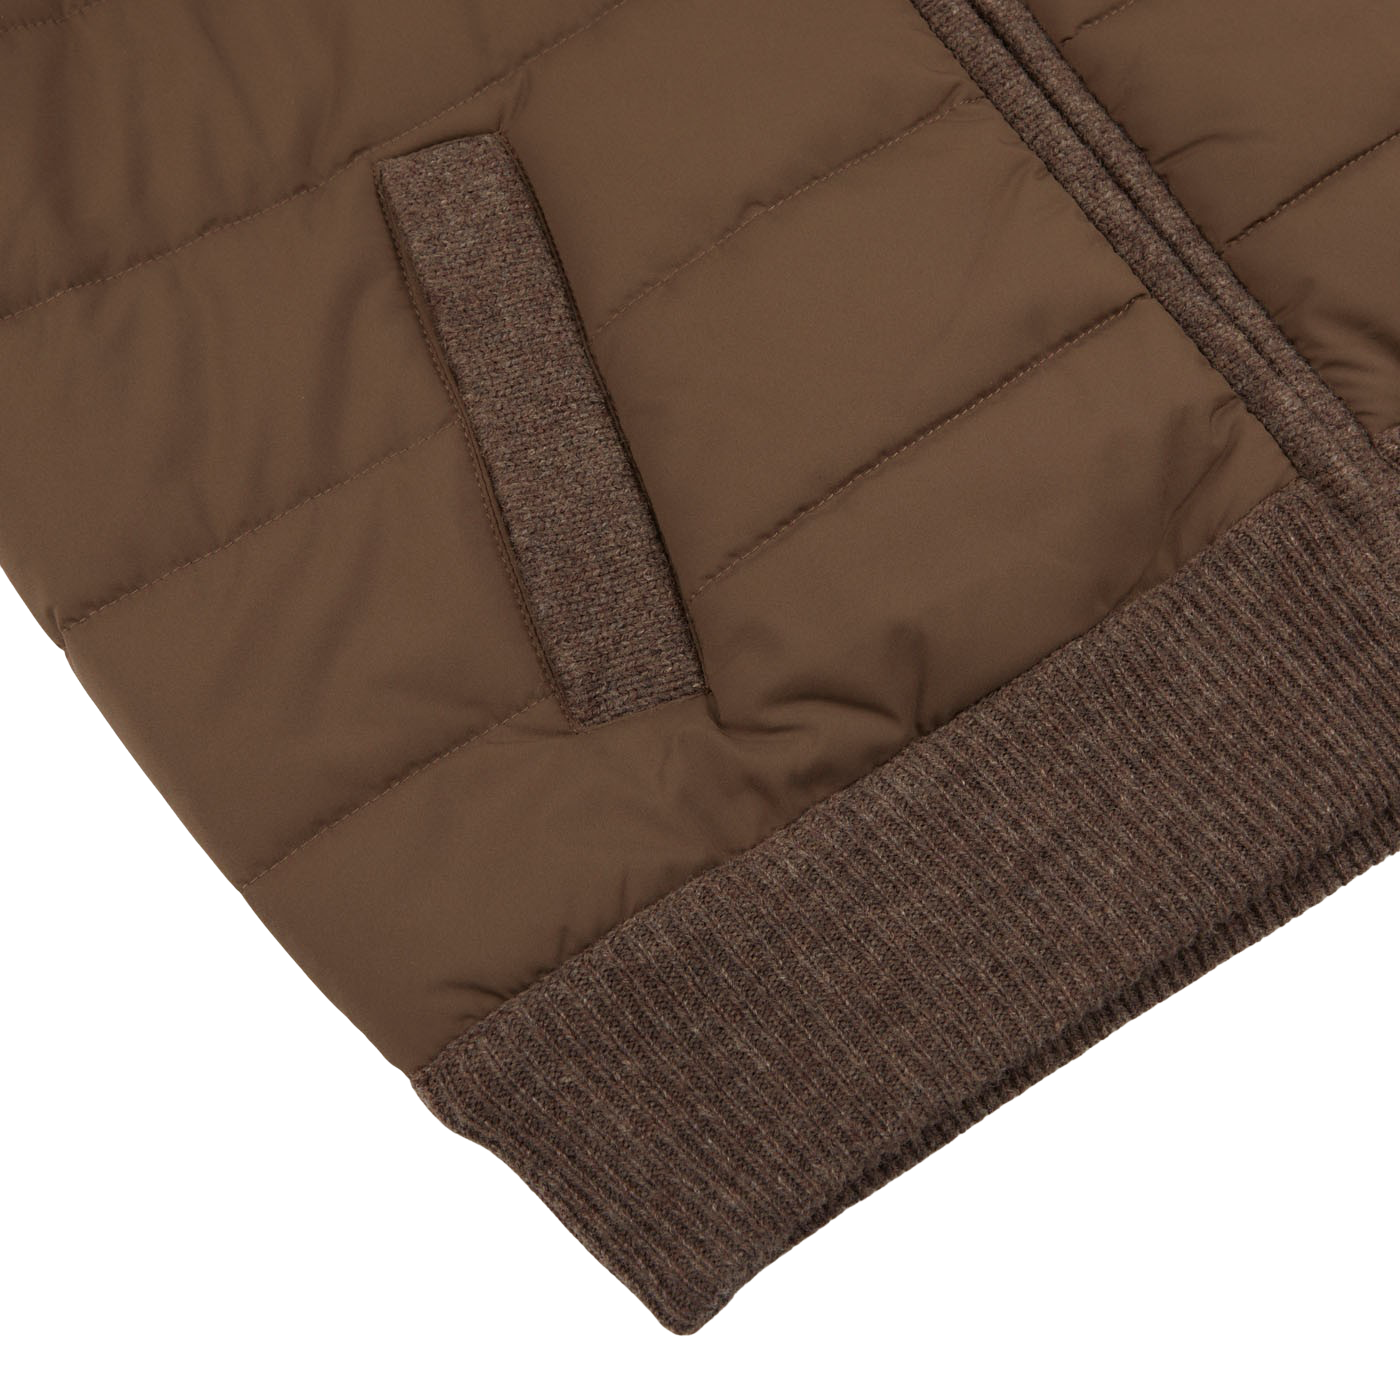 Gran Sasso | Brown Melange Wool Nylon Padded Jacket